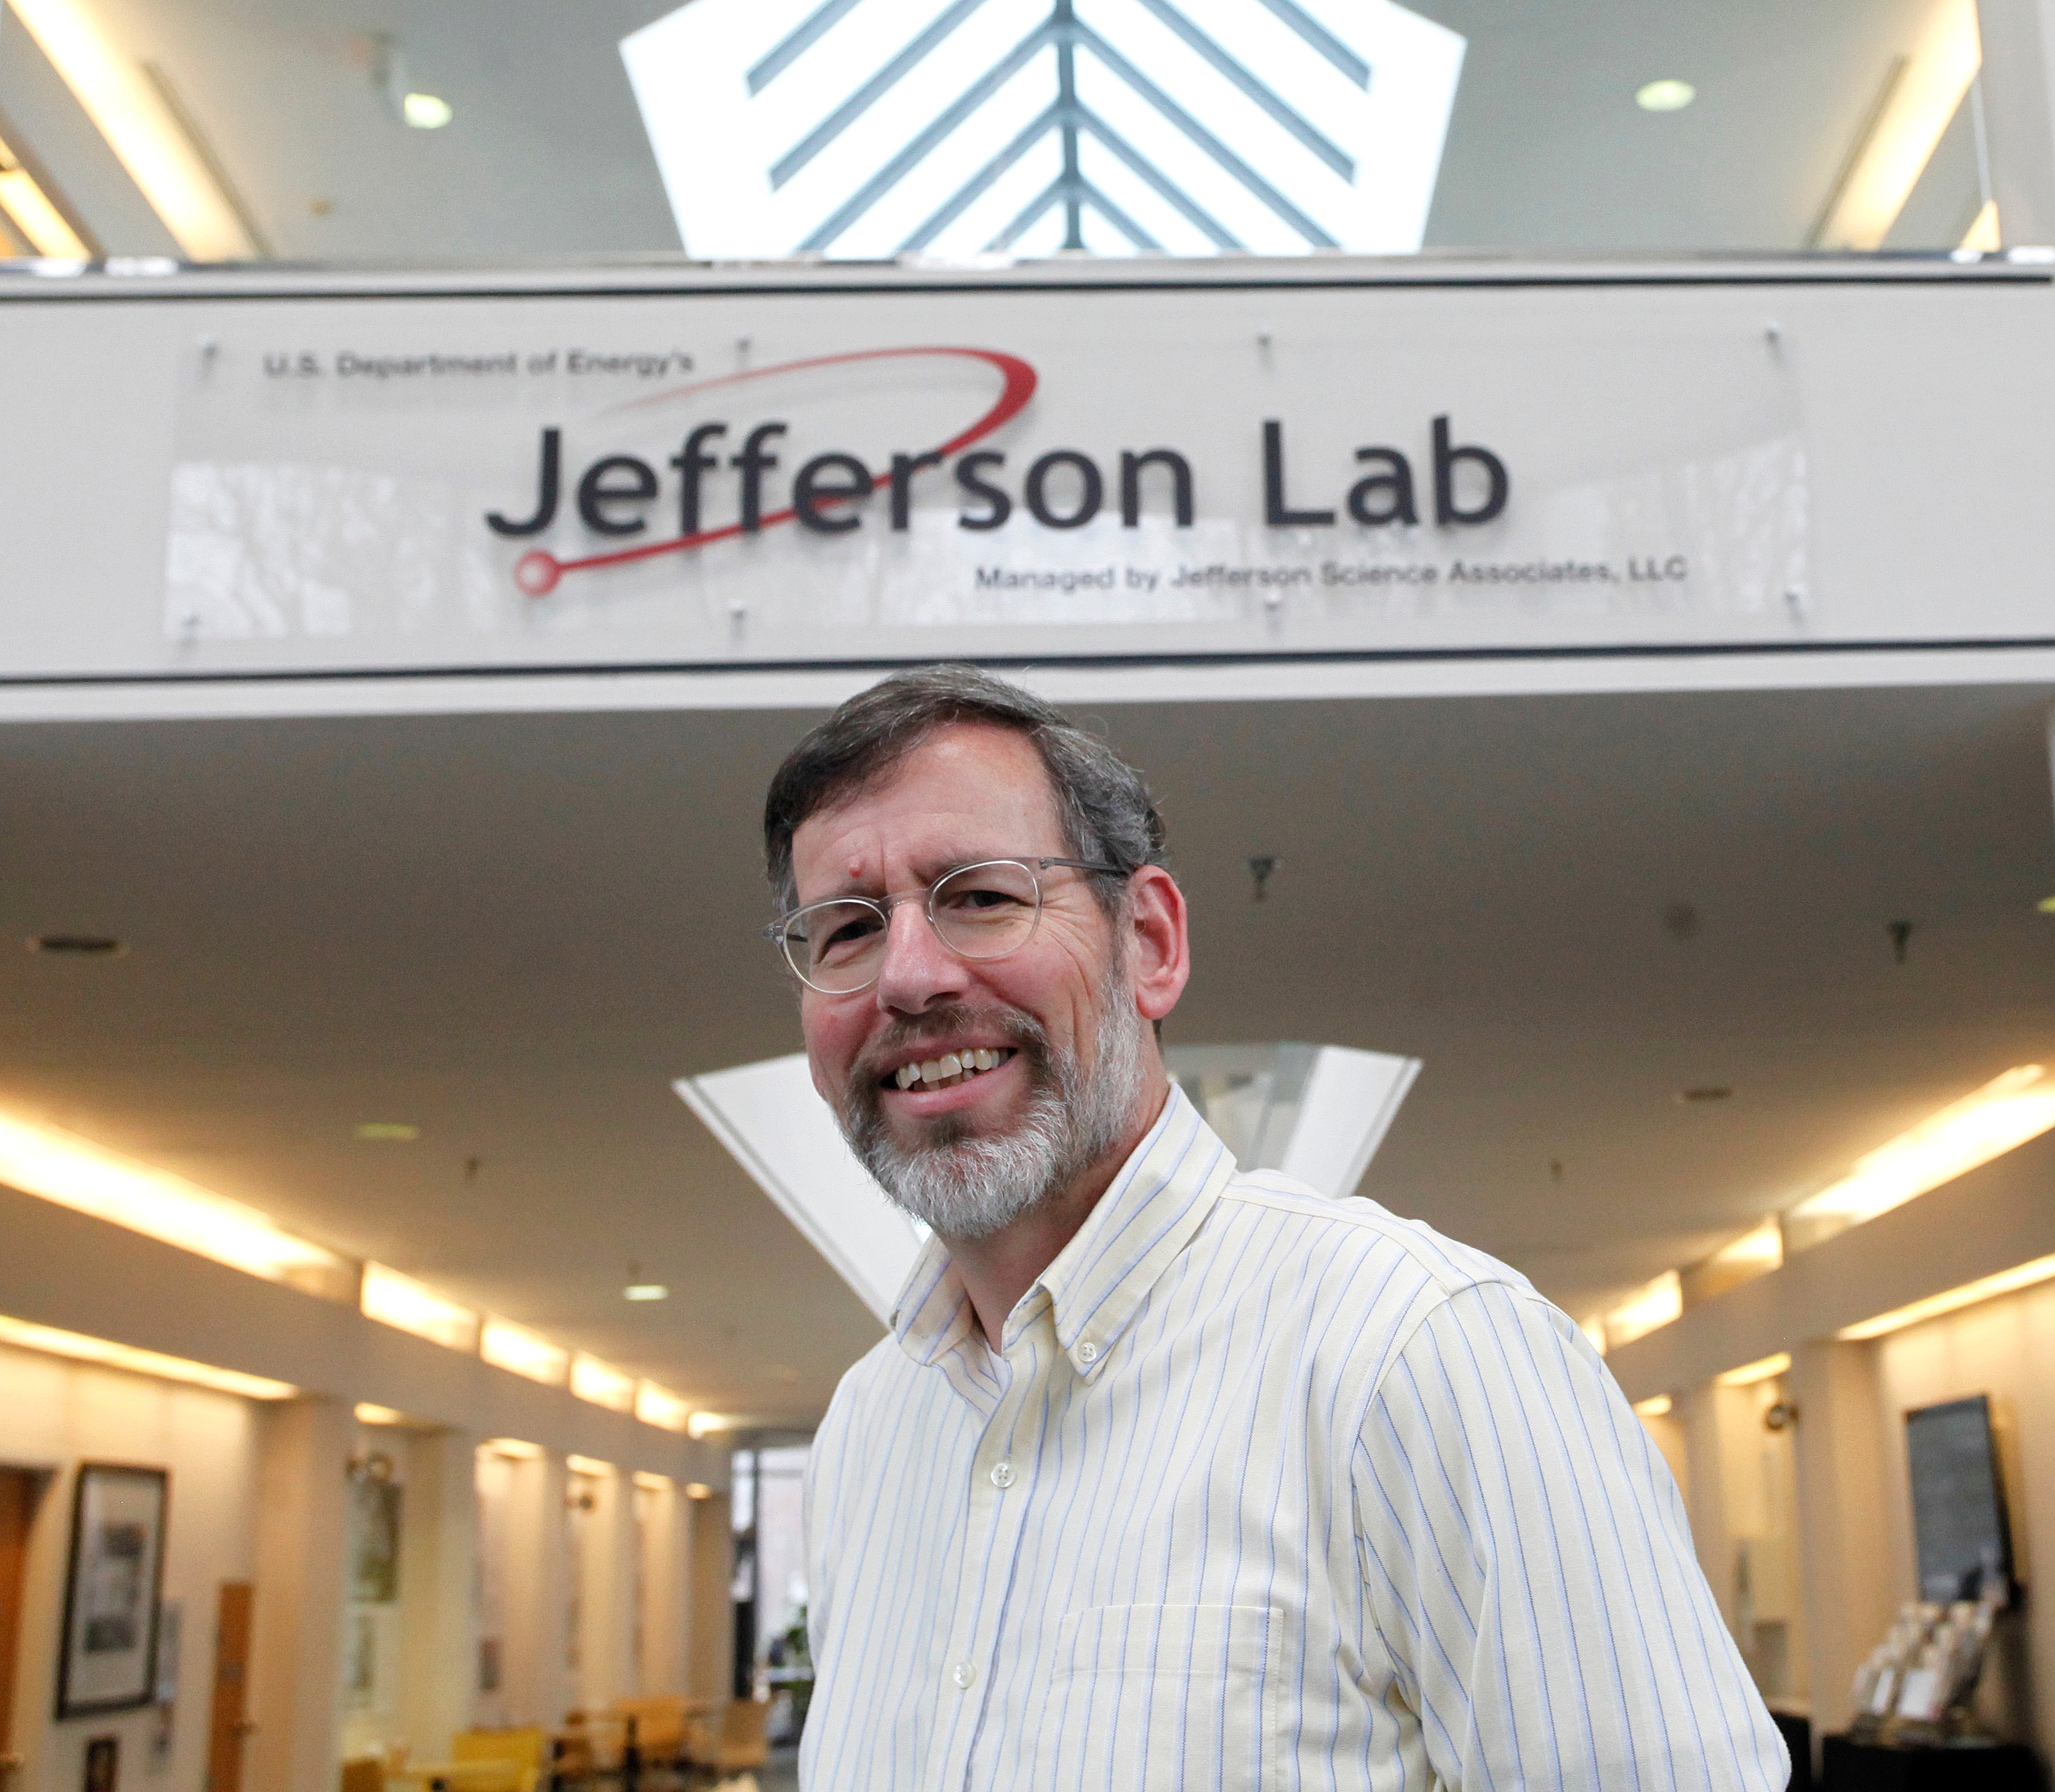 Professor Larry Weinstein Jefferson Lab